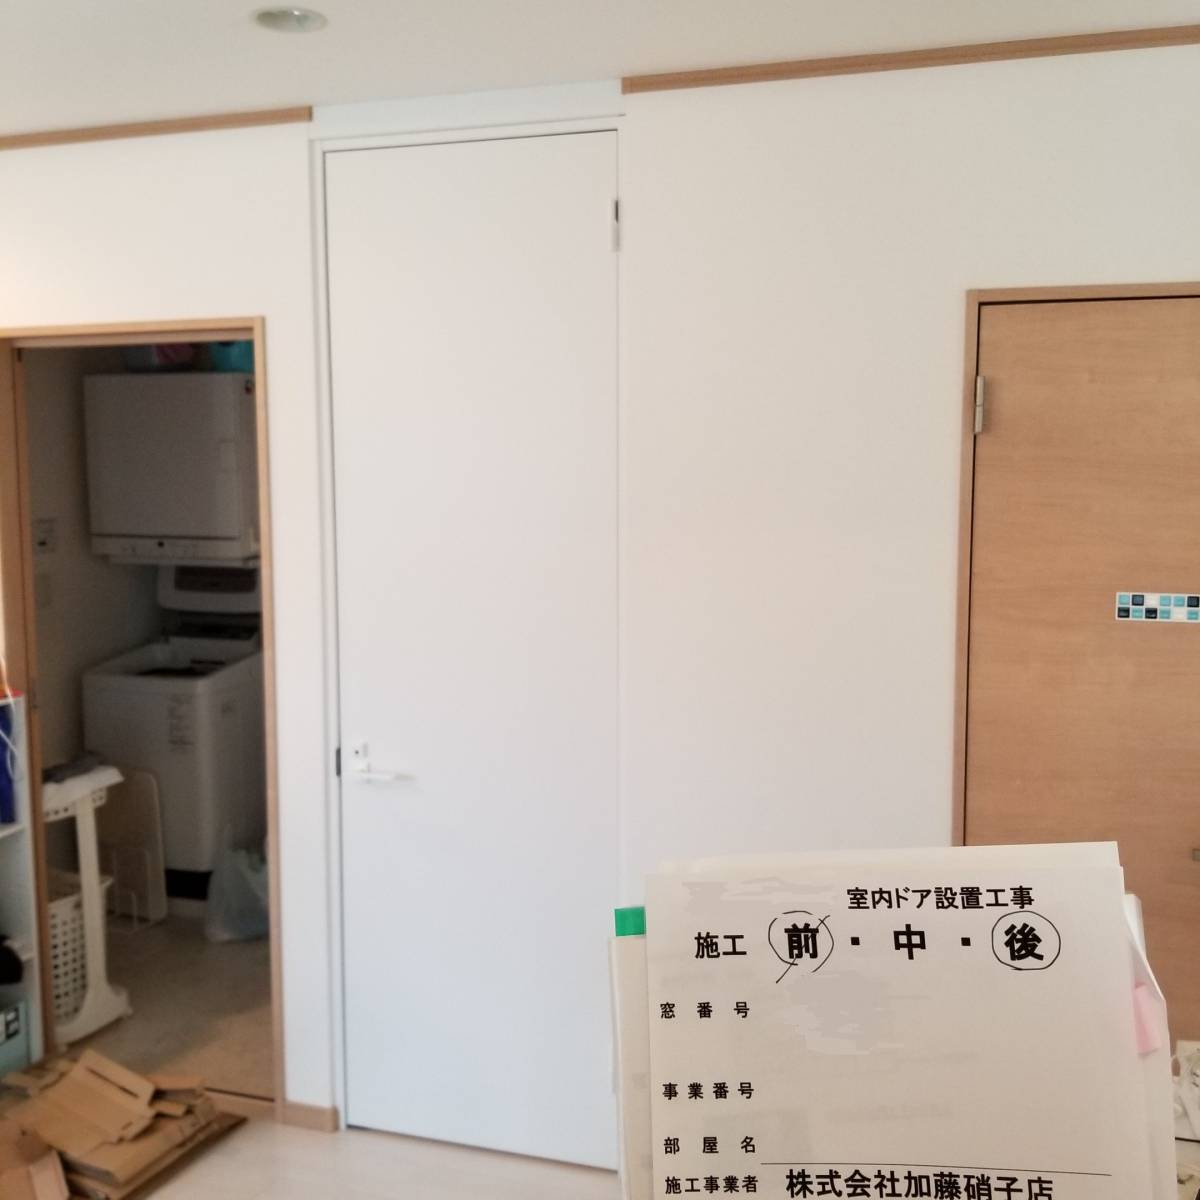 かとうがらすてん　大森山王の階段とお部屋との間仕切りにドアをお取付け致しました。の施工後の写真1